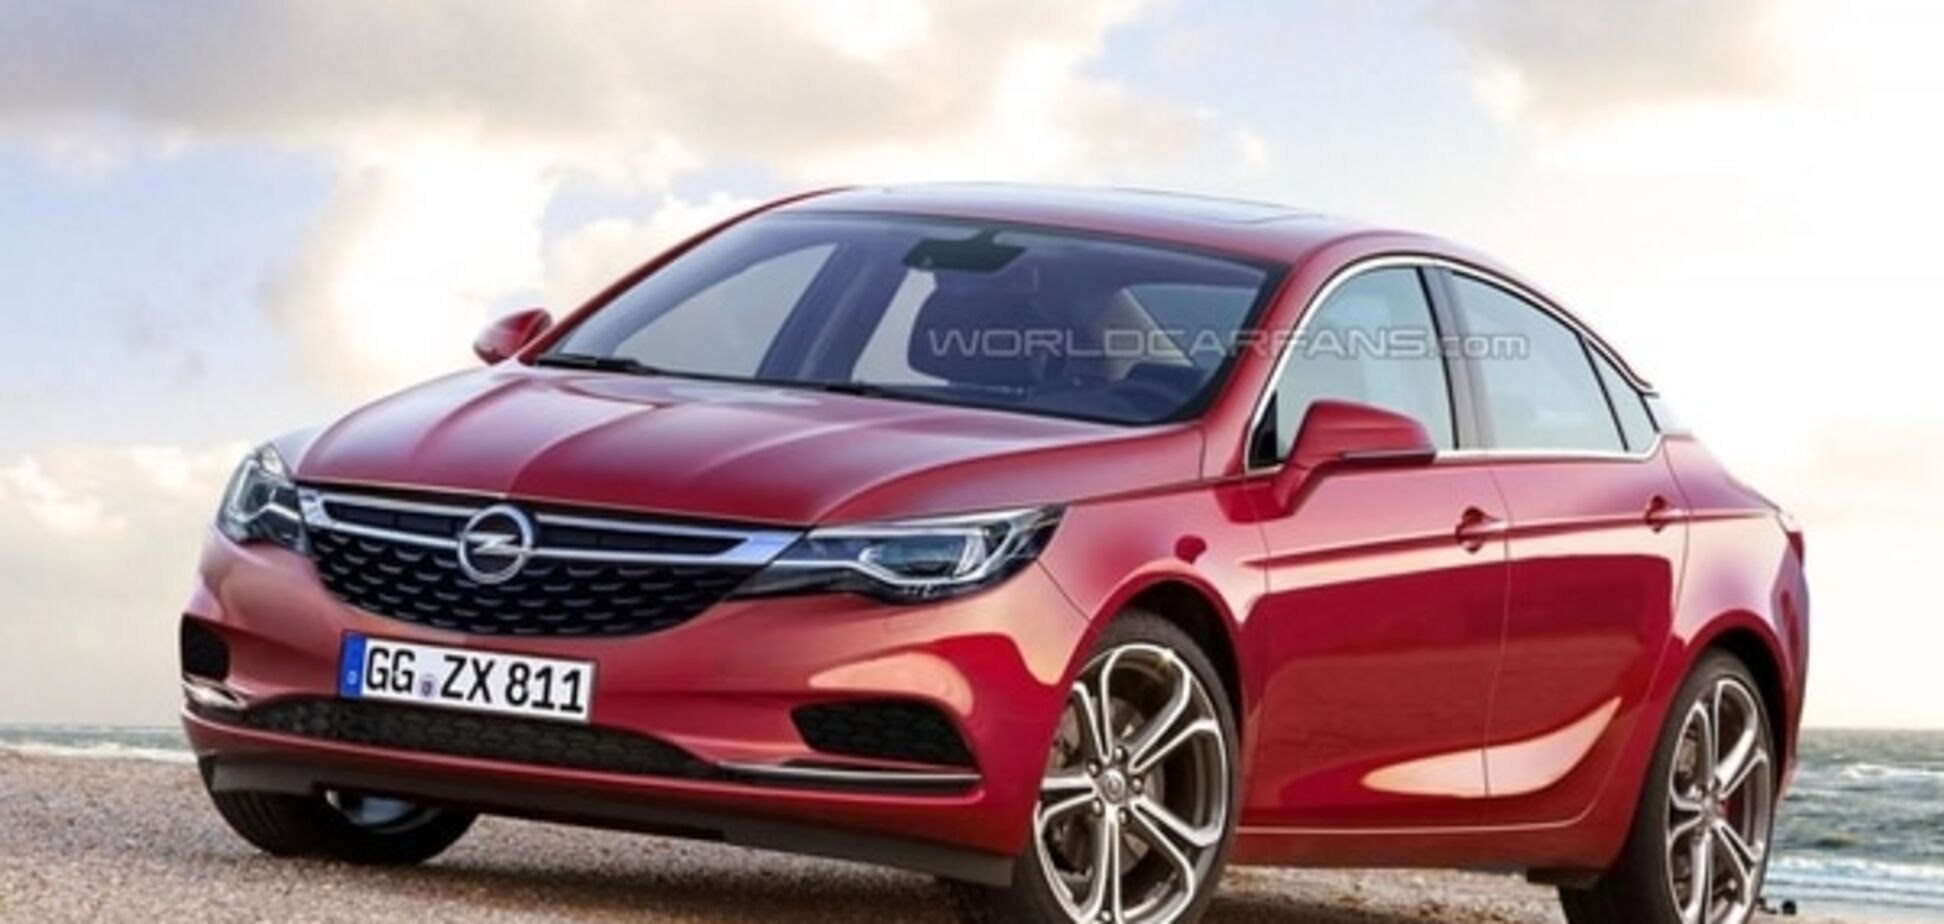 Автошпионы нарисовали смелый образ для нового Opel Insignia